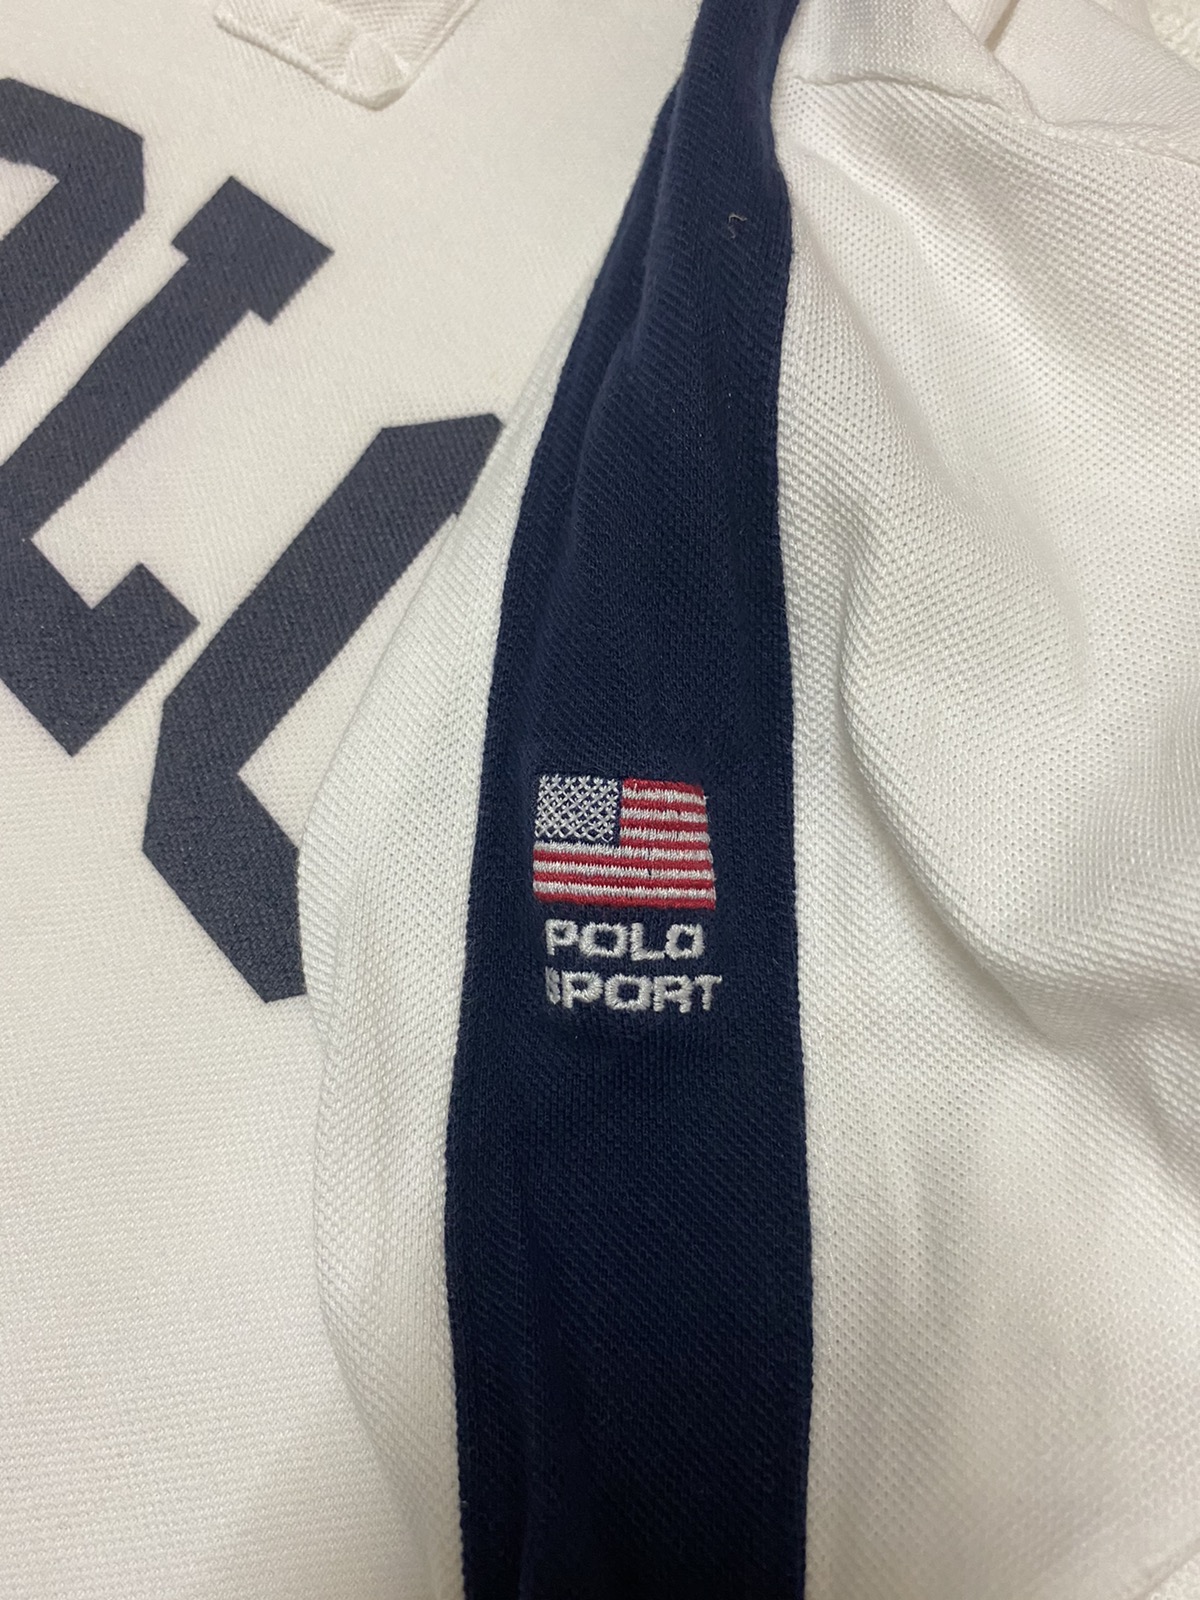 Polo Ralph Lauren - Polo Sport Ralph Lauren Long Sleeve Shirt - 5